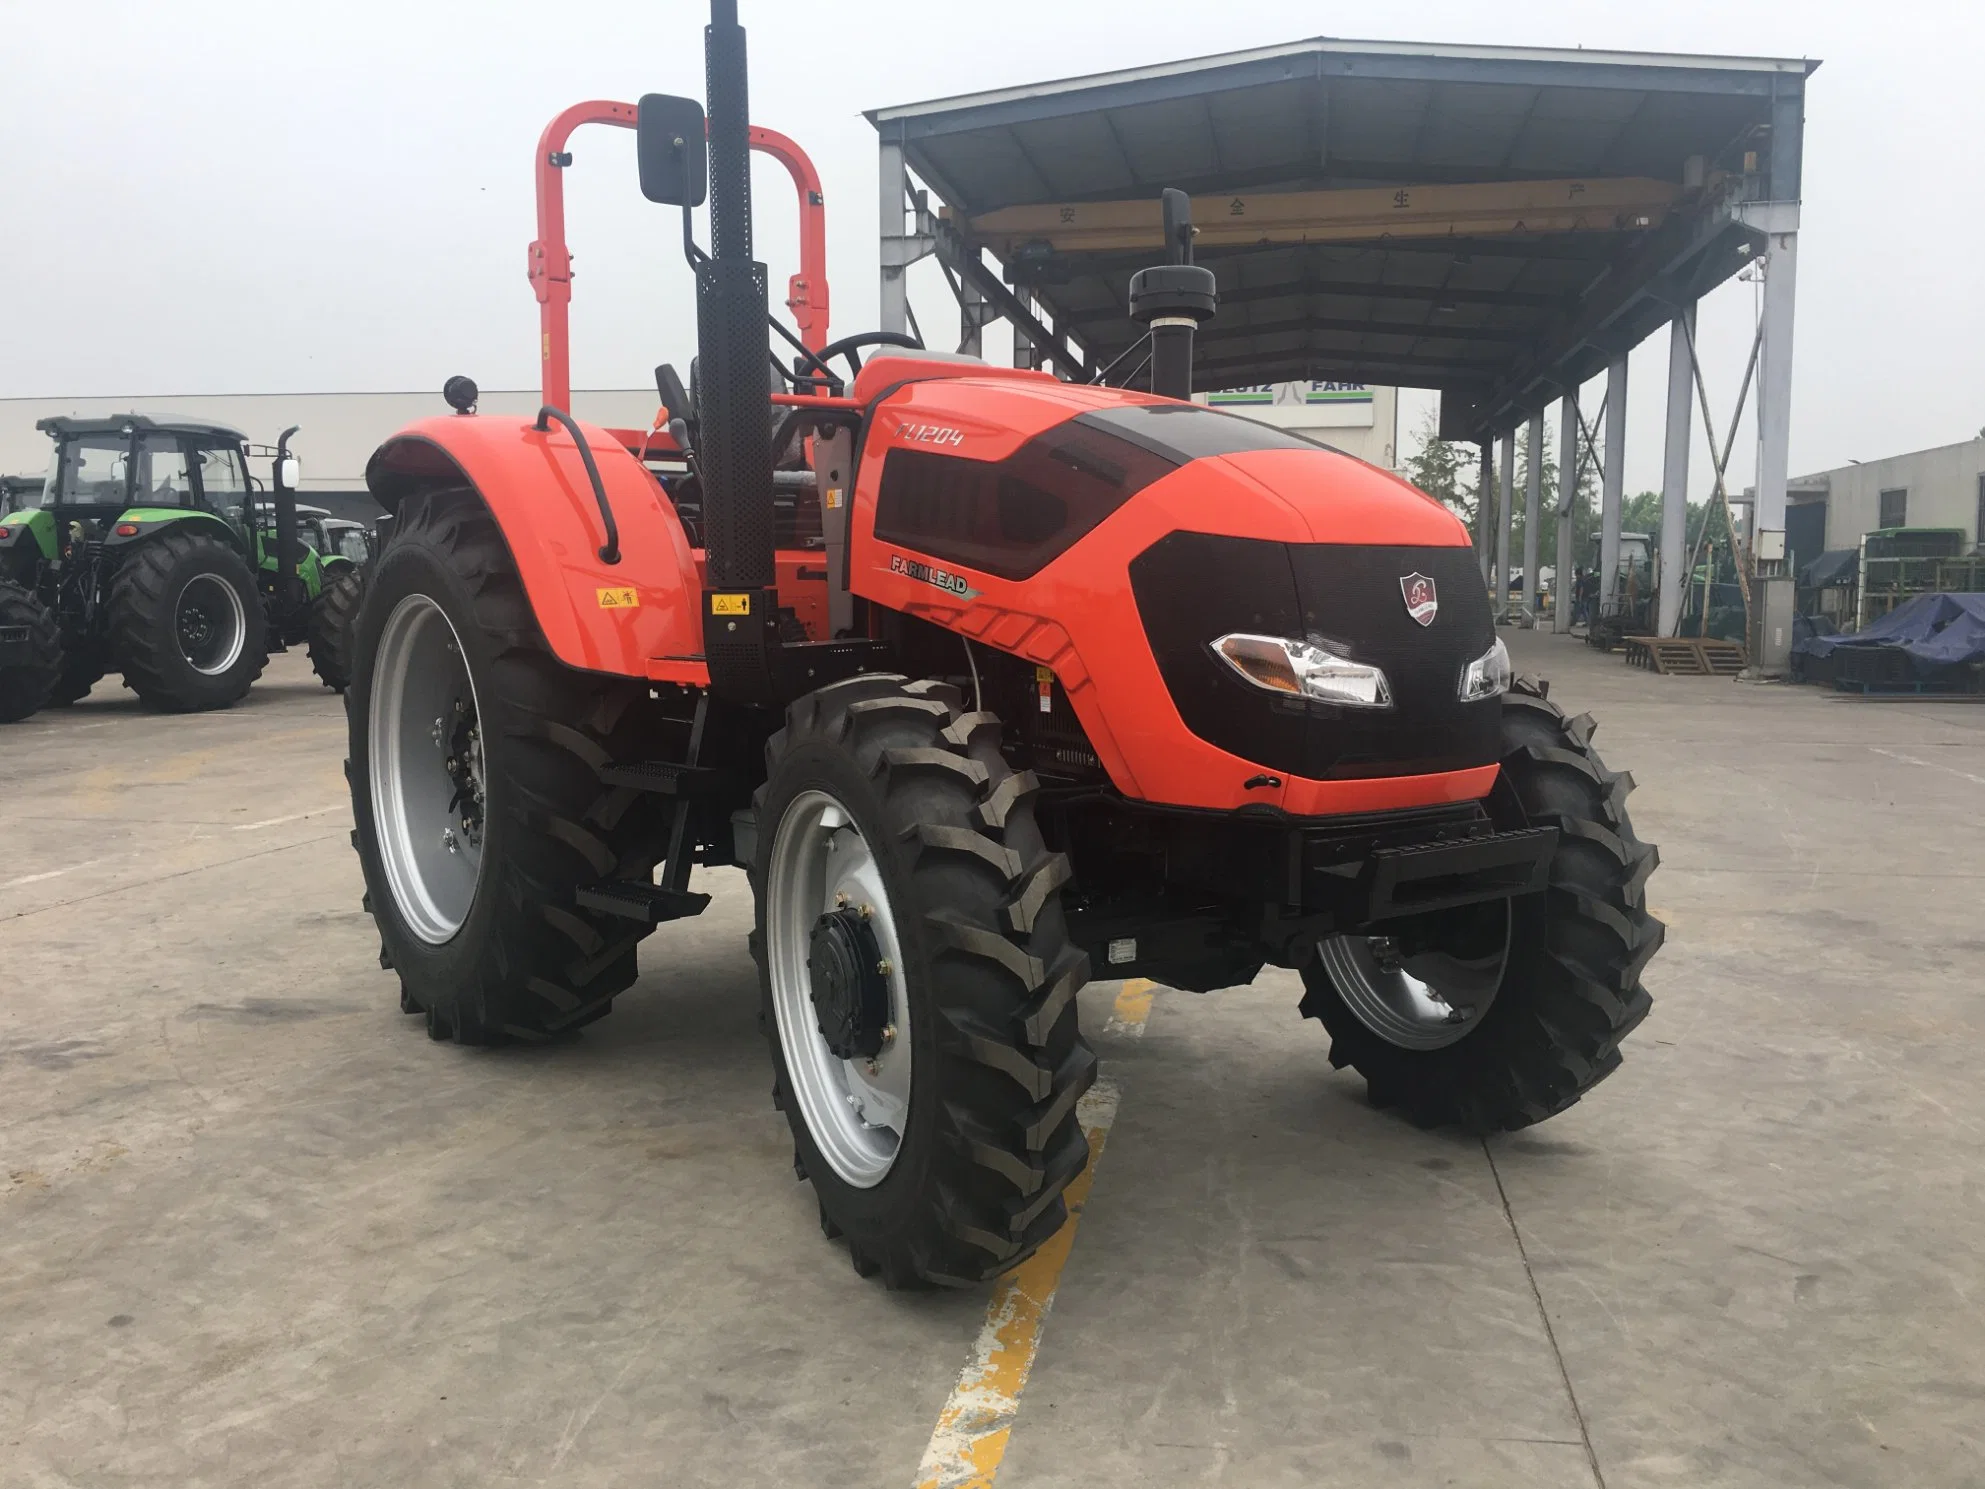 FL1404 tractor 1-120hp 4WD cabina de campo de Sinopard tractor agrícola Tractores de aperos